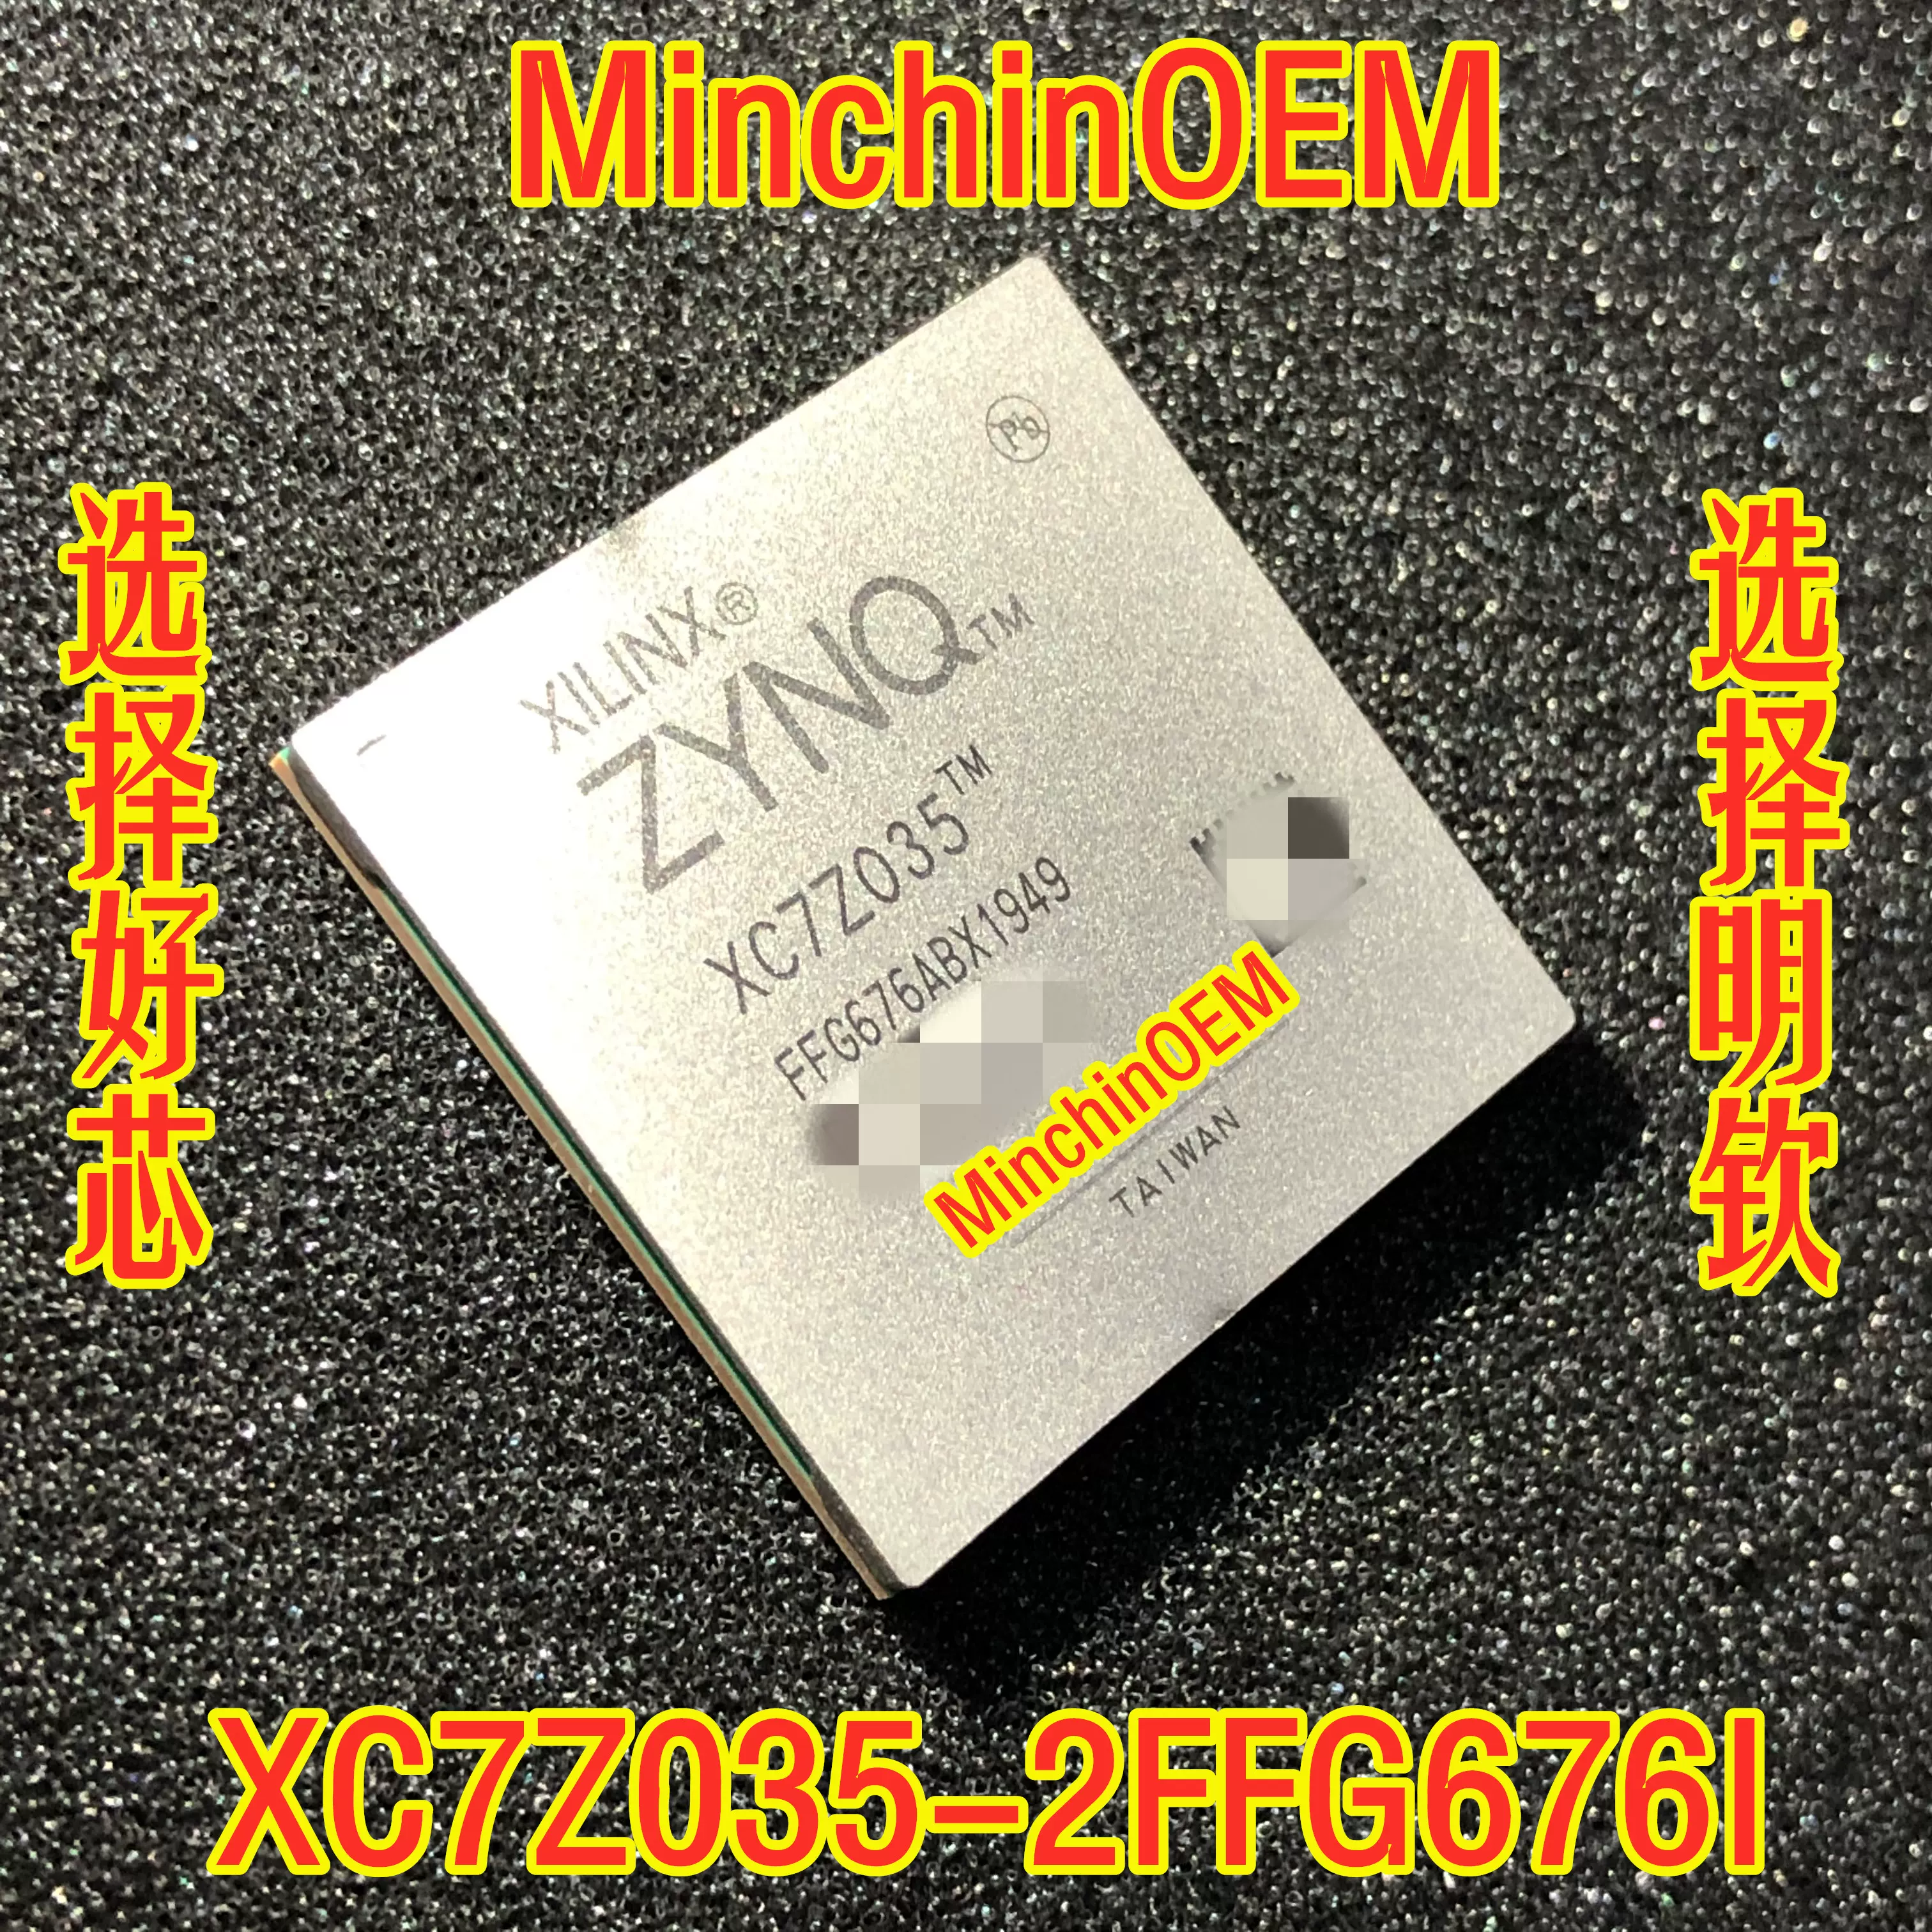 XC7Z035-2FFG676I 选择好芯选择明钦AD XILINX MinchinOEM